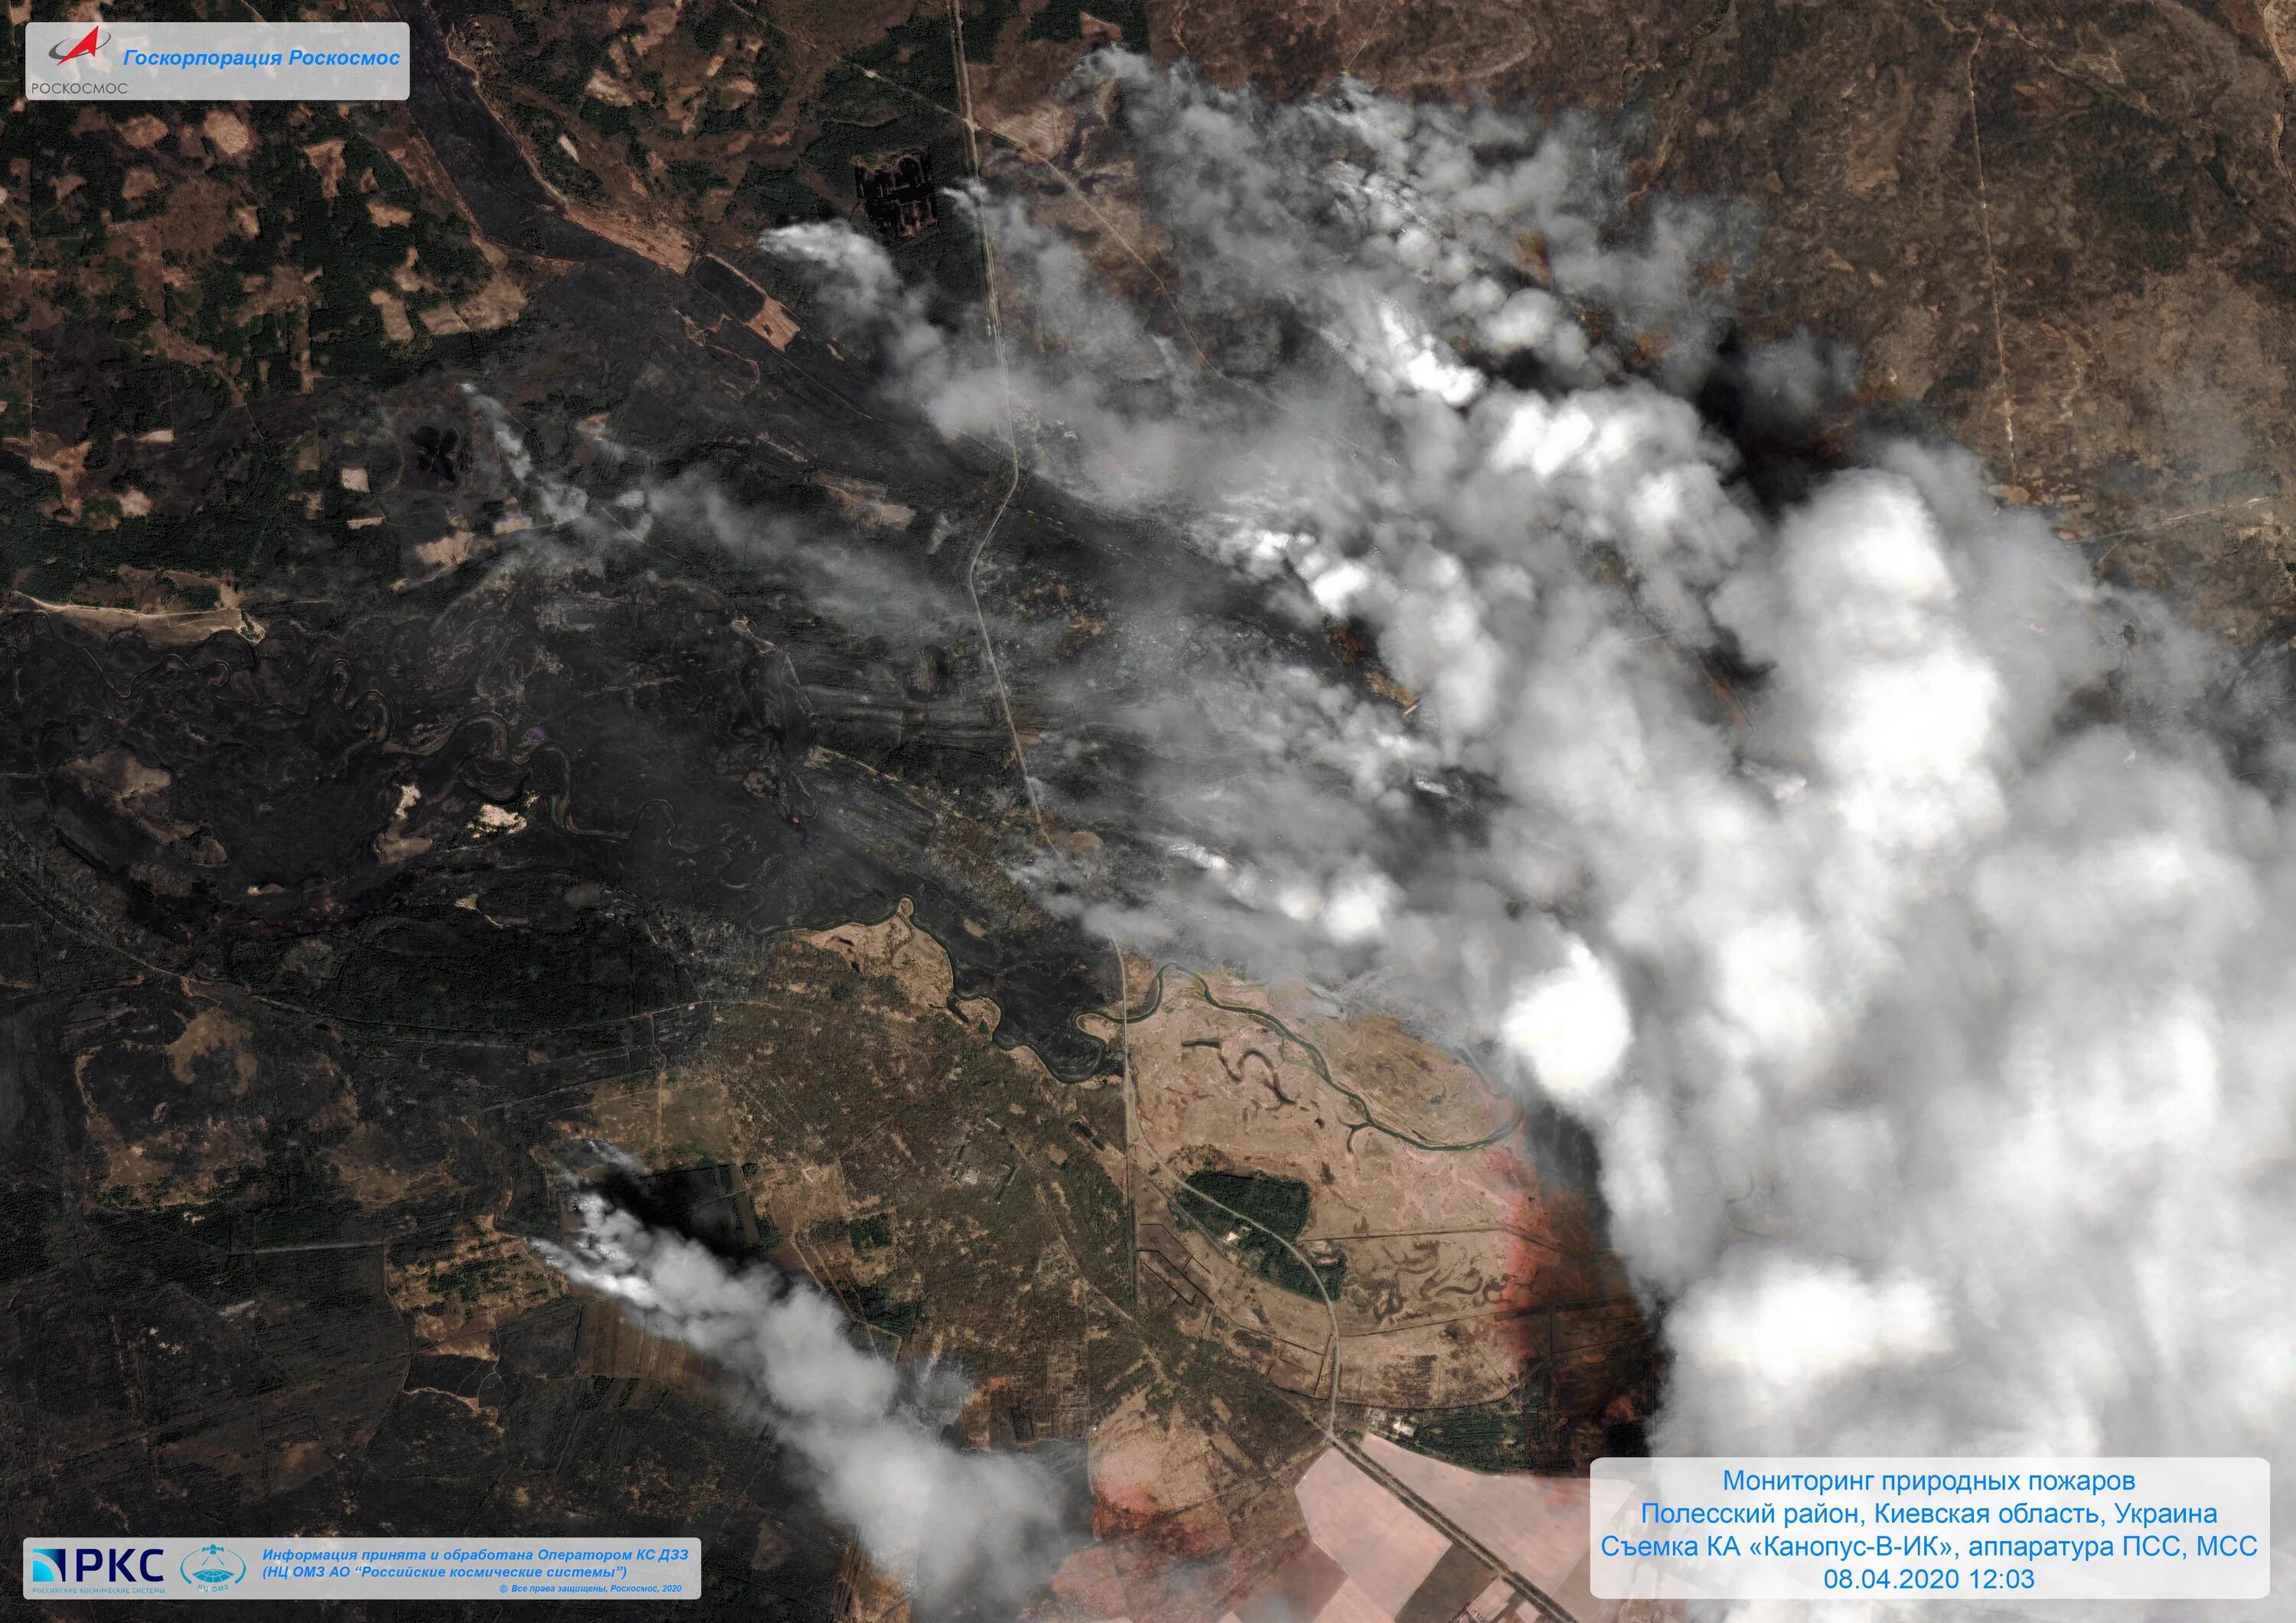 Снимки со спутников Канопус в. Спутниковый снимок лесного пожара. Пожар со спутника. Лесные пожары снимки со спутника. Сгорели спутники